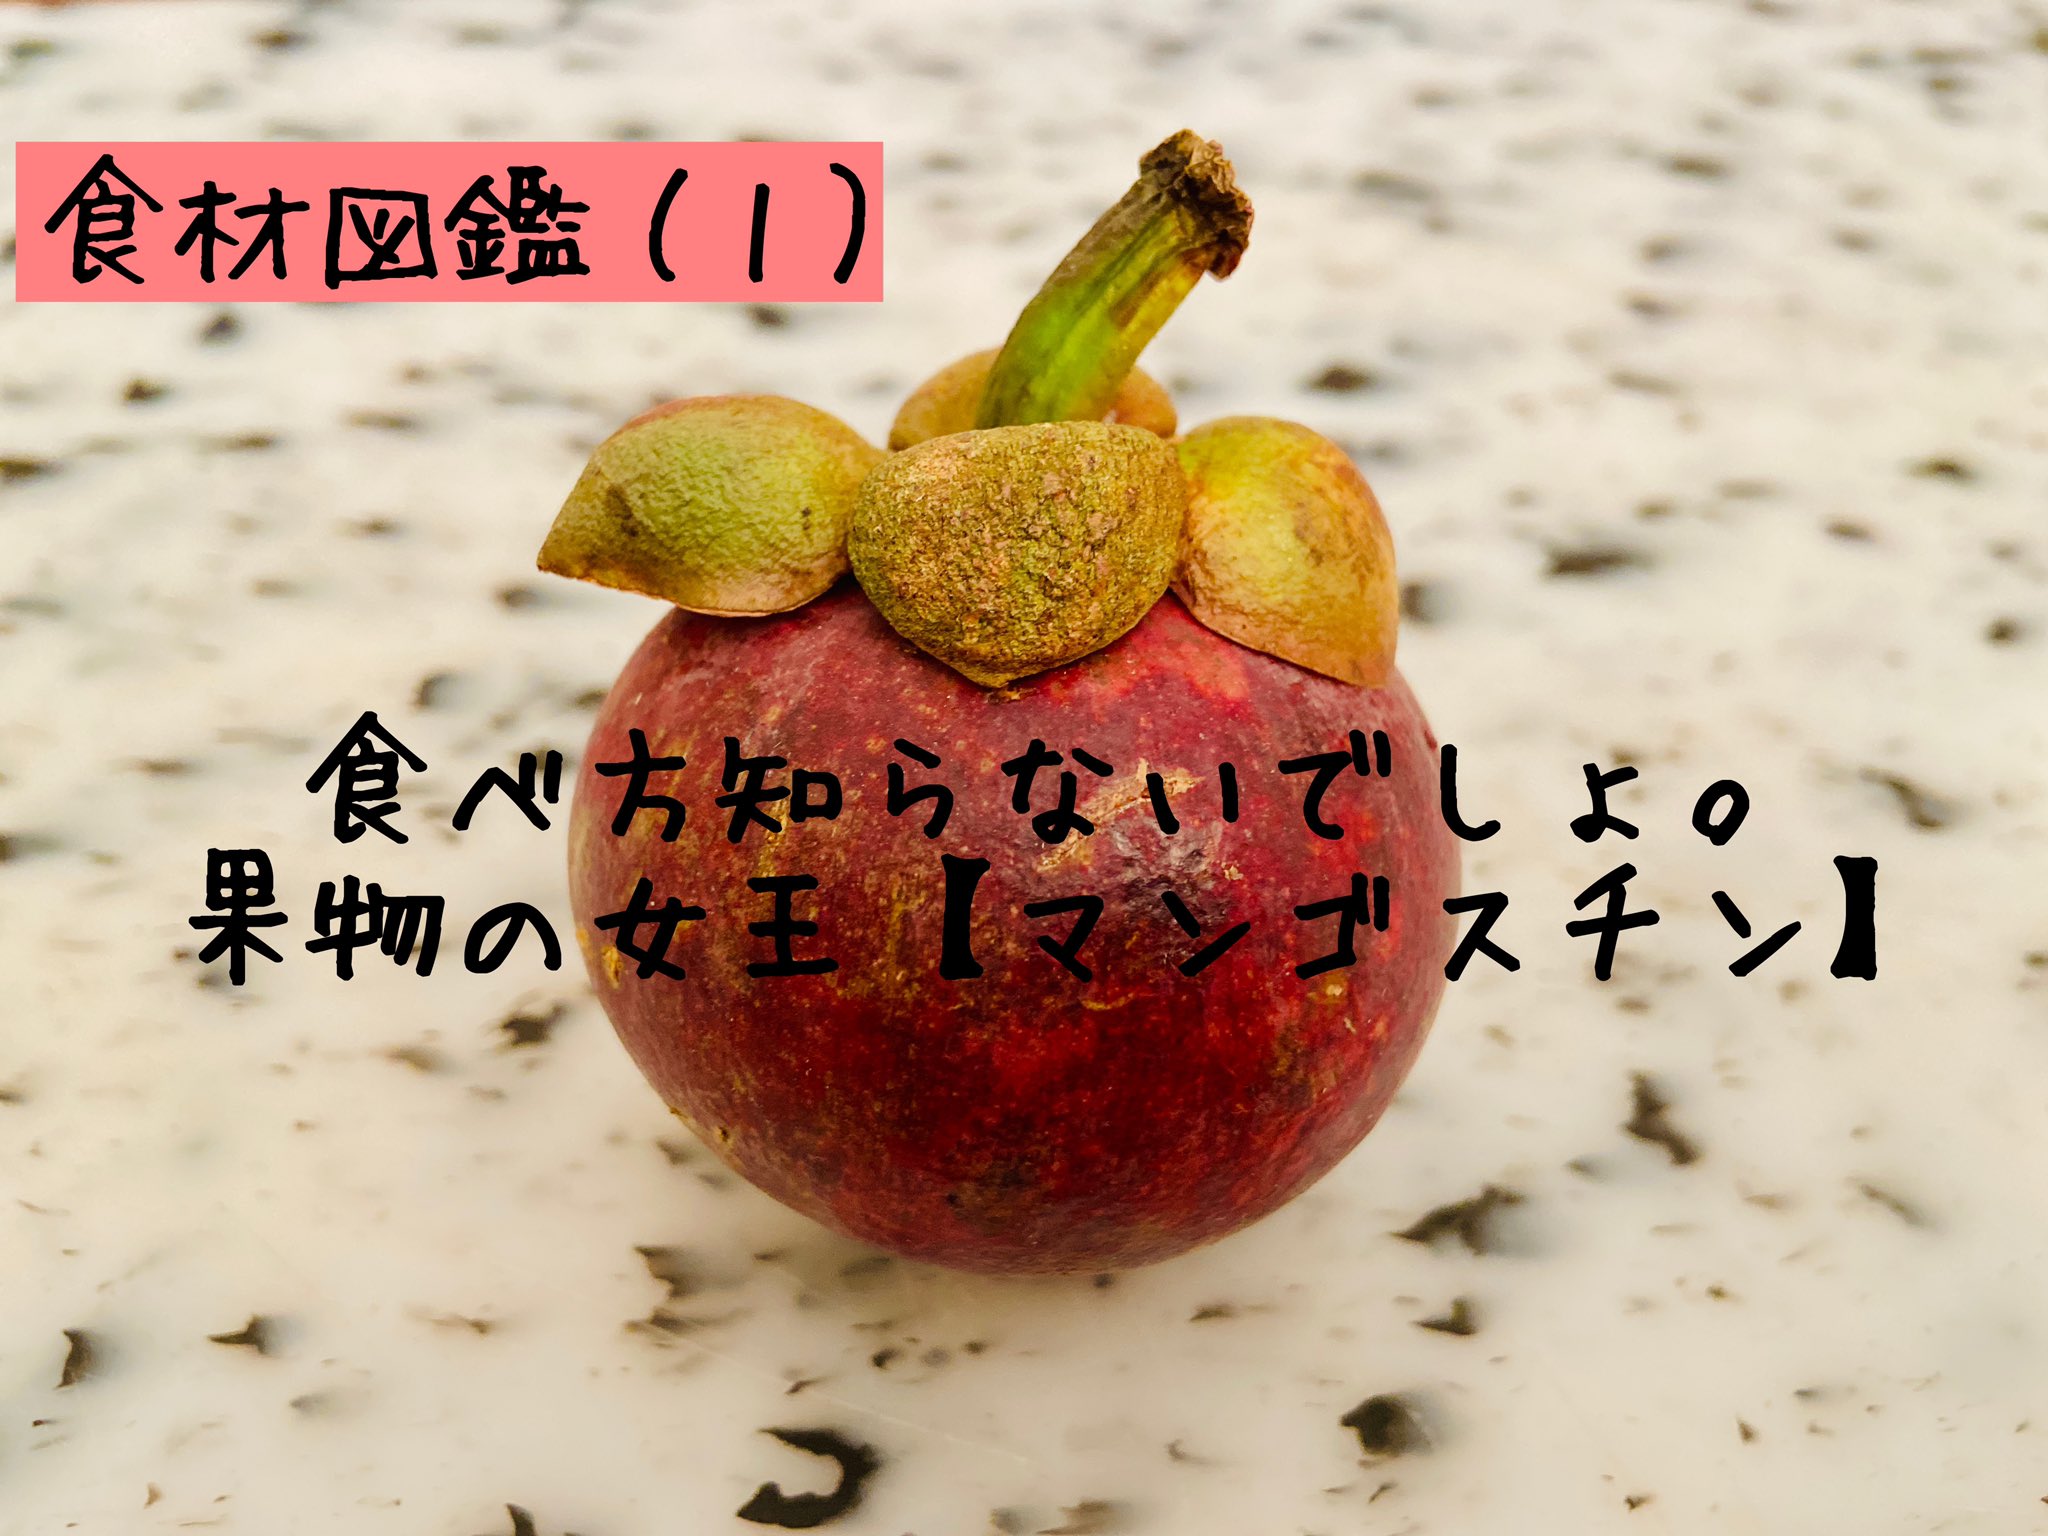 Kazuma Chikuda 食材図鑑 １ 果物の女王マンゴスチン Mangoustan Mangosteen Shorts 食材をショート動画で紹介する 食材図鑑 シリーズを始めてみました 良かったら感想や知りたい食材をコメントいただけたら嬉しいです 食材図鑑 マンゴスチン